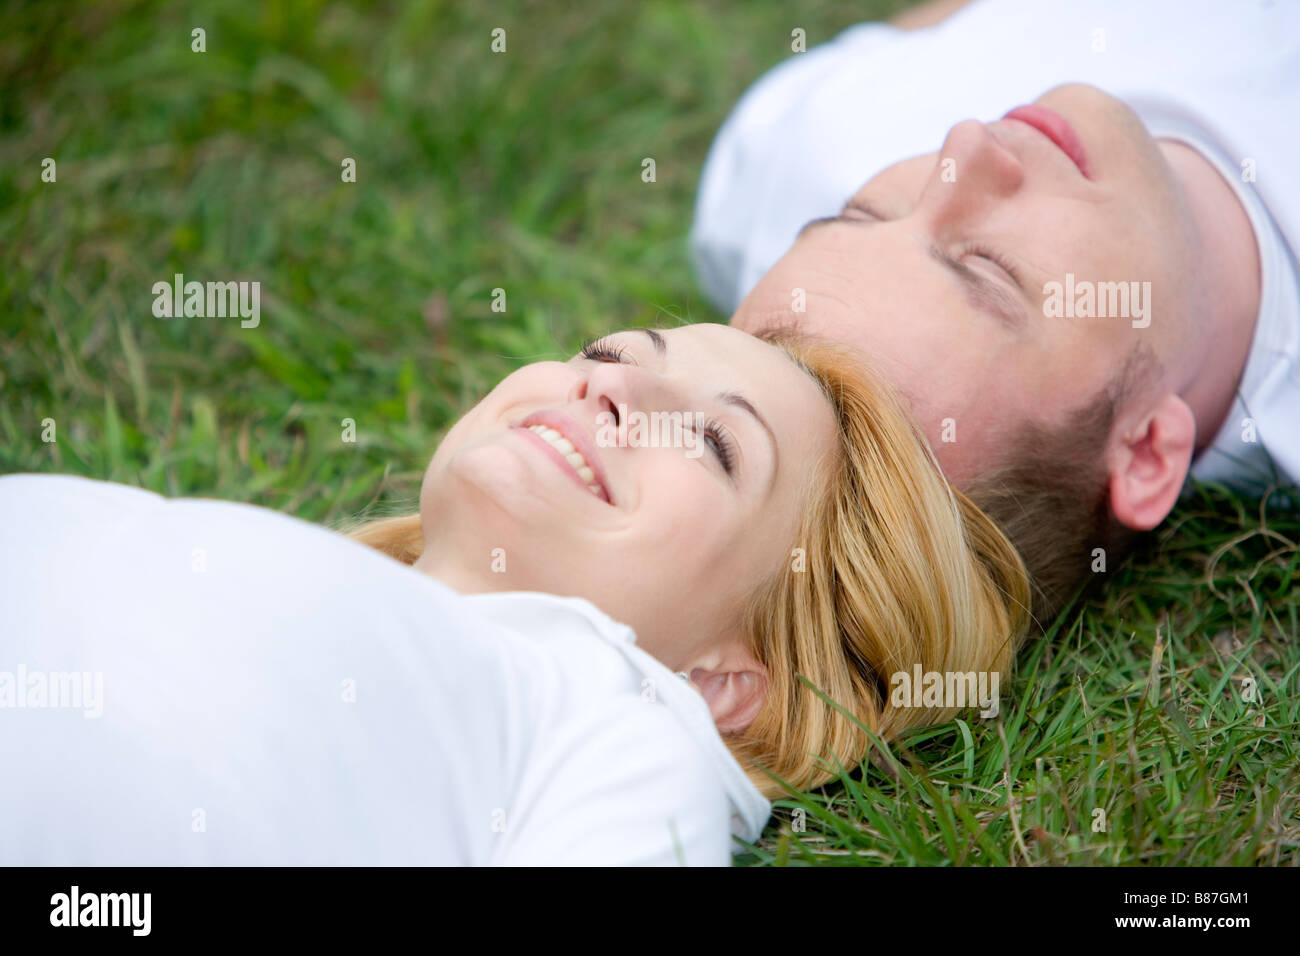 Paar im Rasen Kopf an Kopf liegen Stockfoto